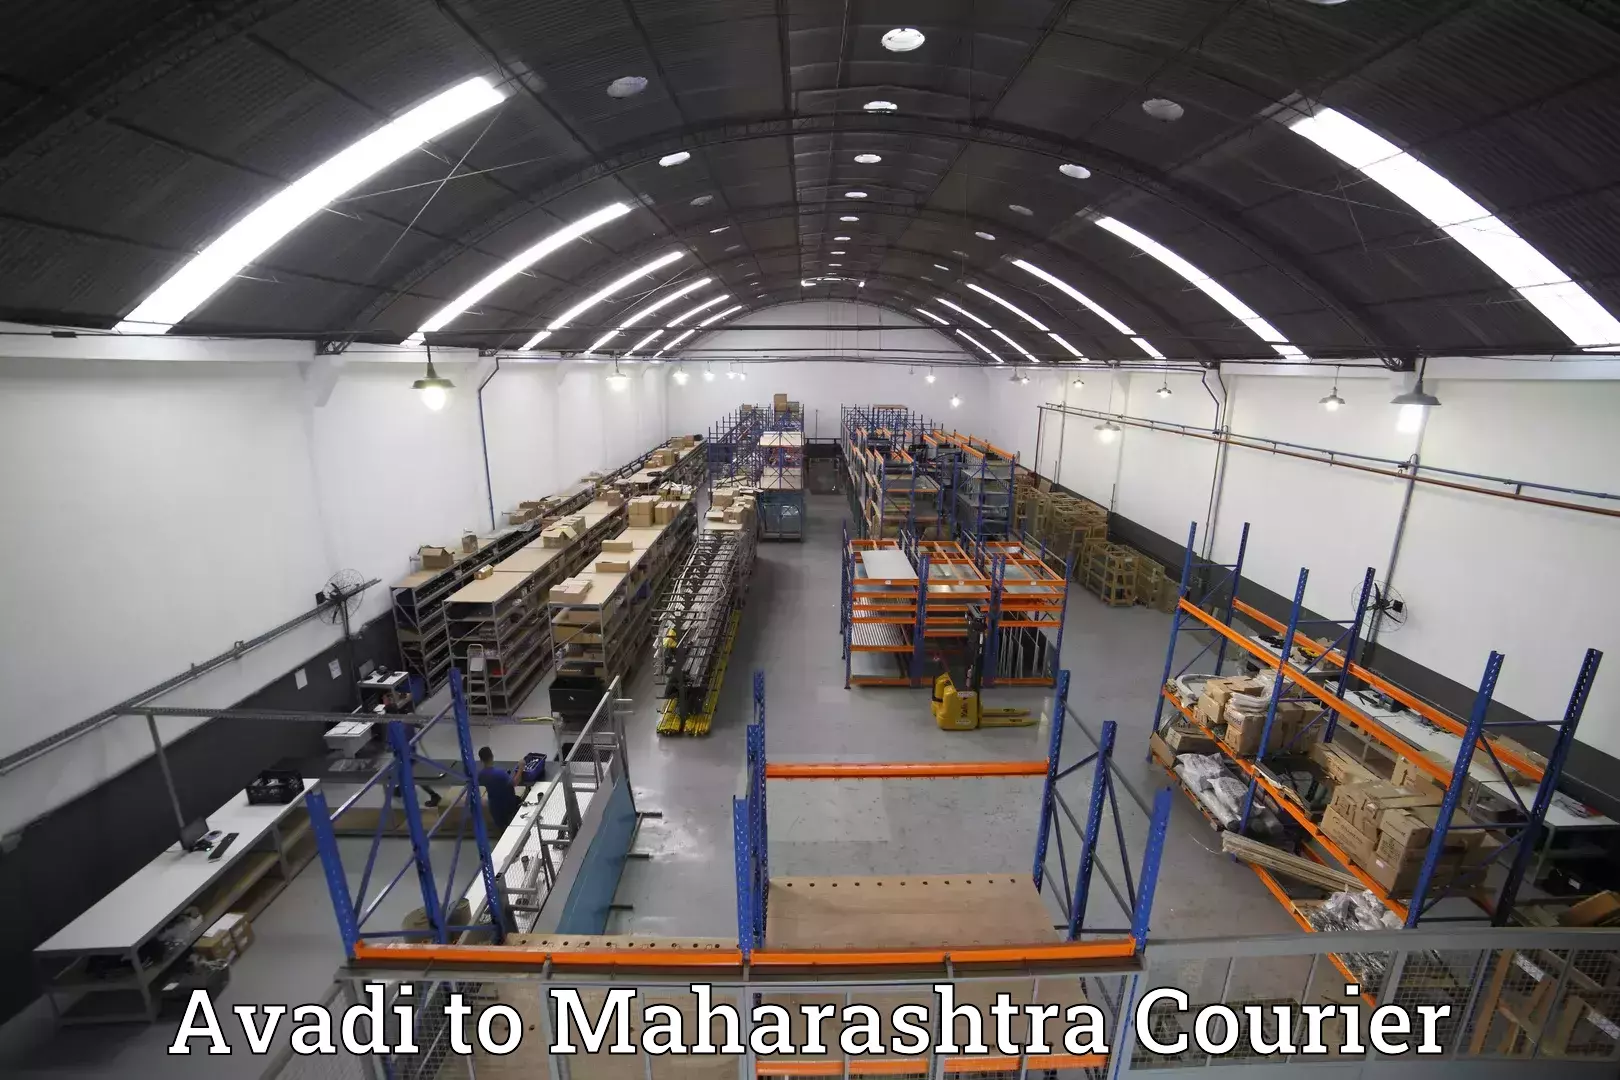 Baggage shipping experts Avadi to Maharashtra